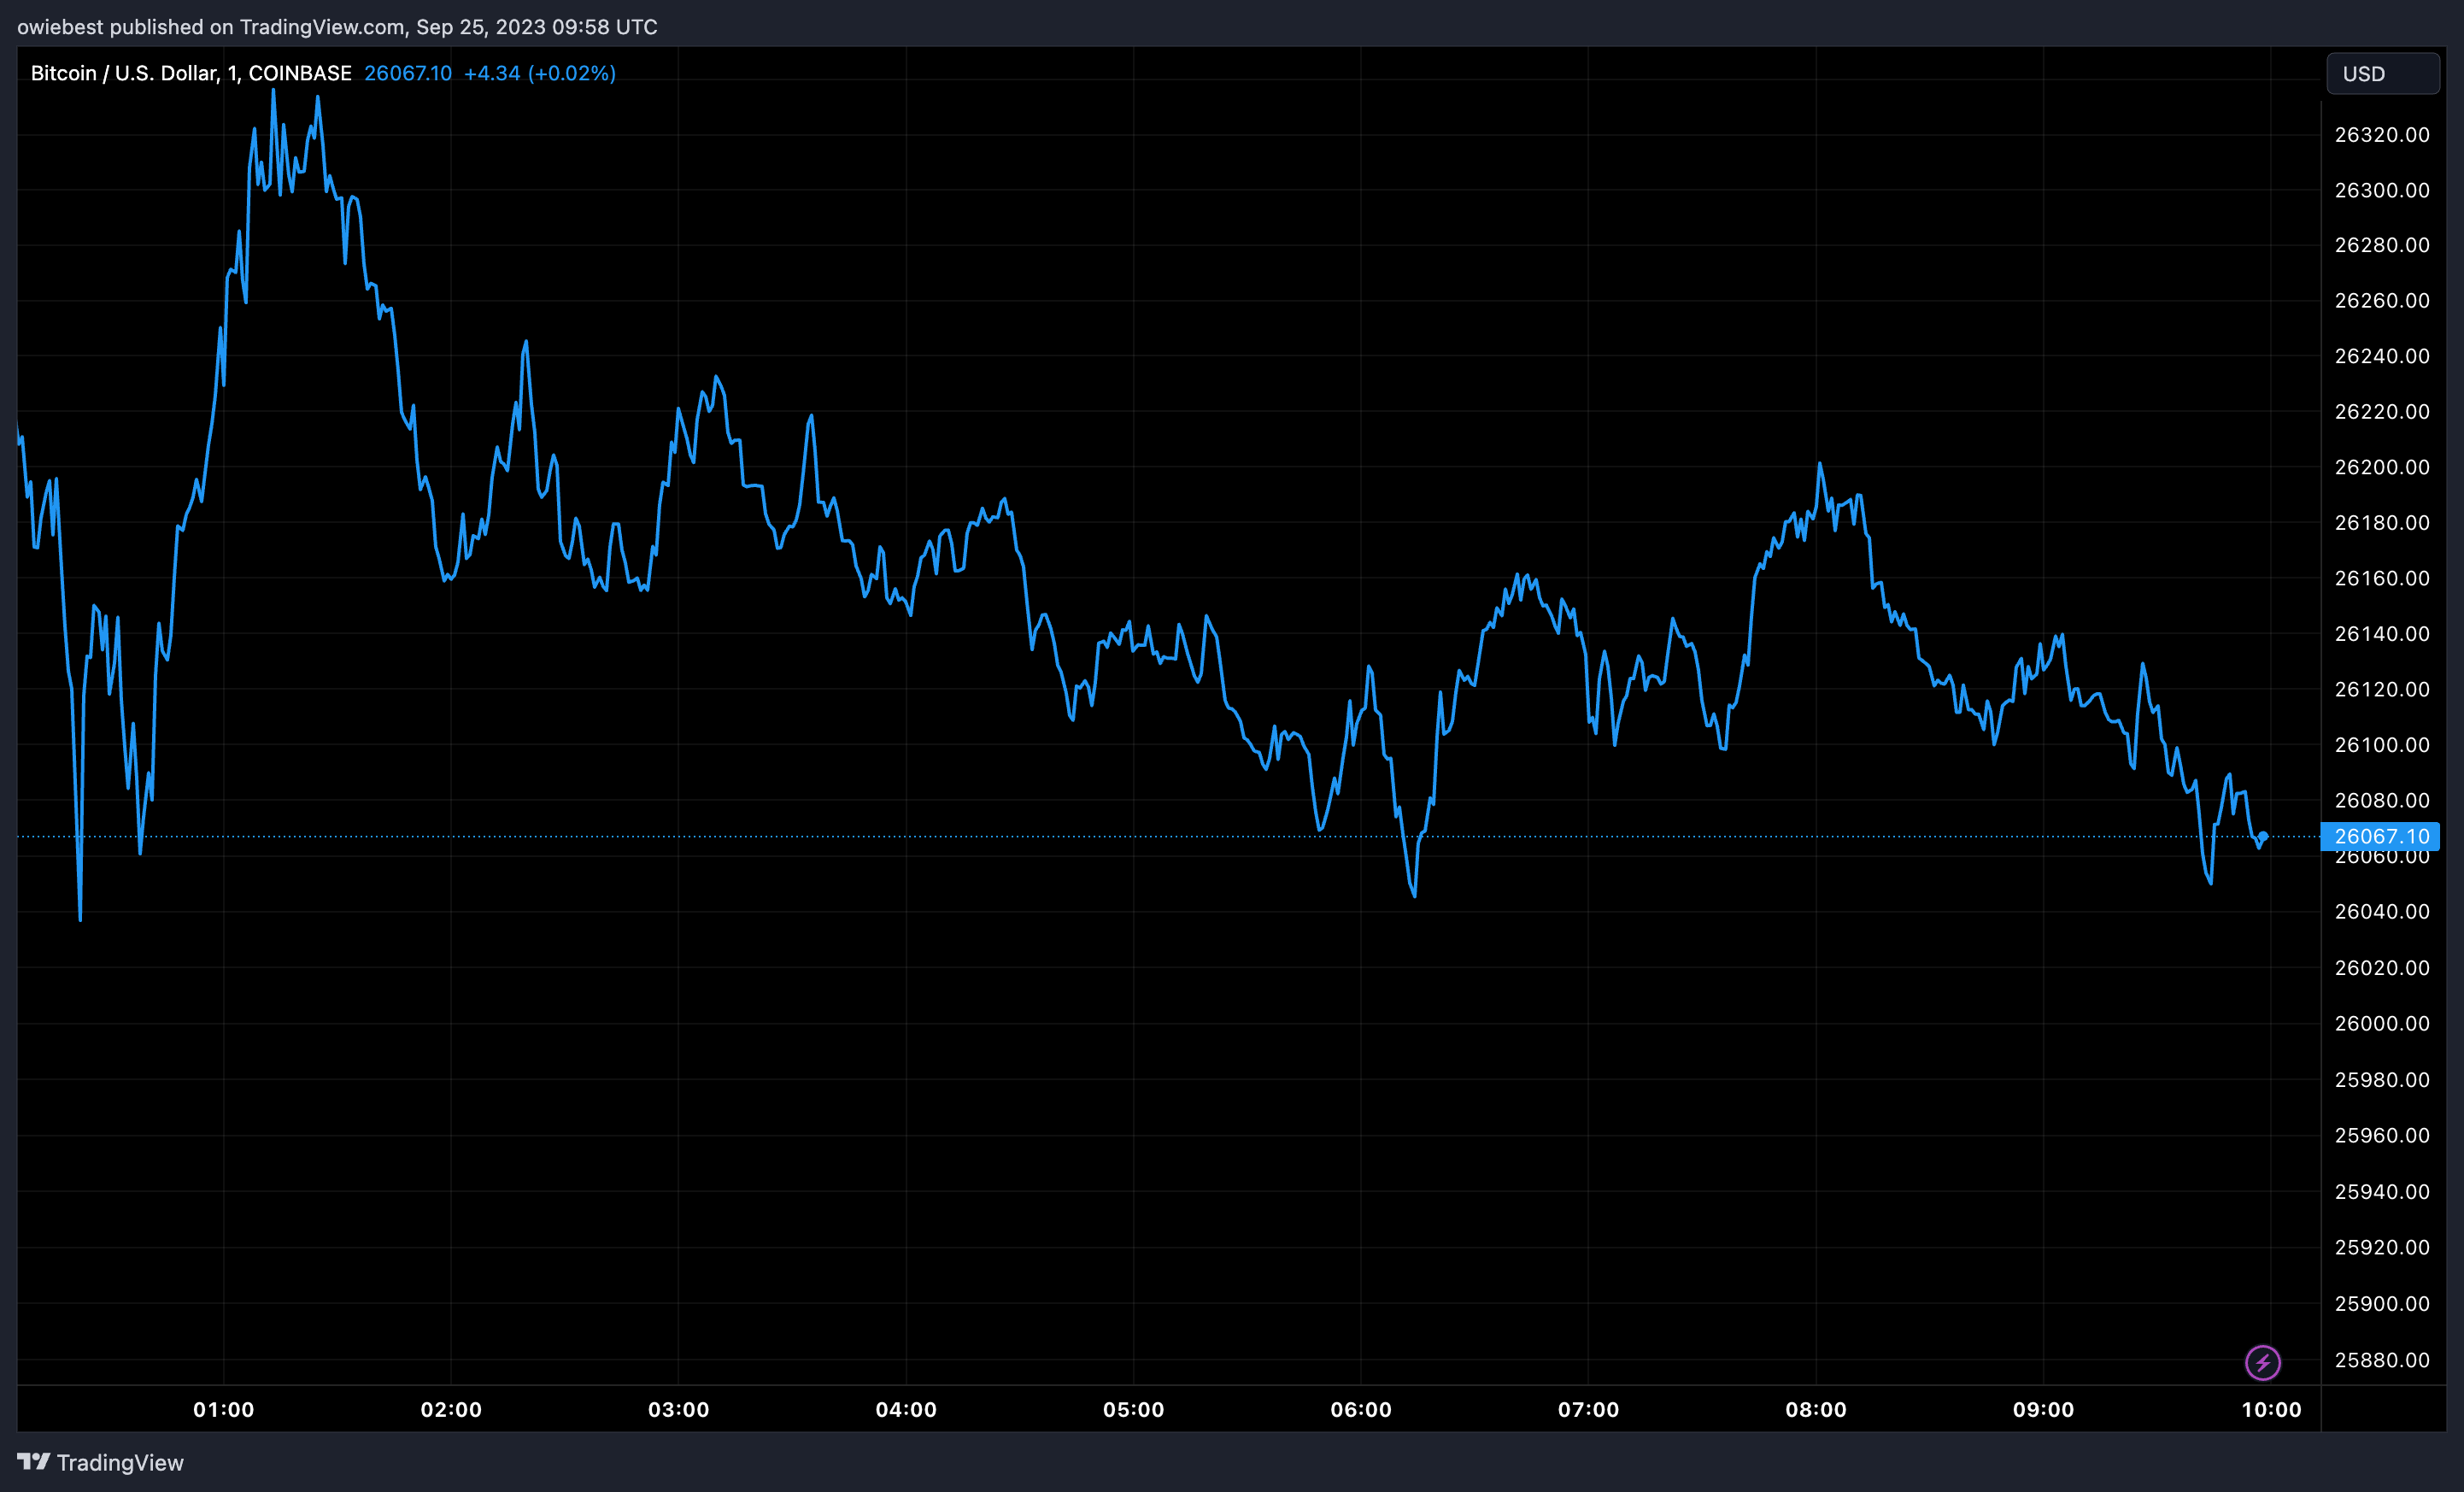 График цен на биткоин от Tradingview.com (прогноз цен на BTC)